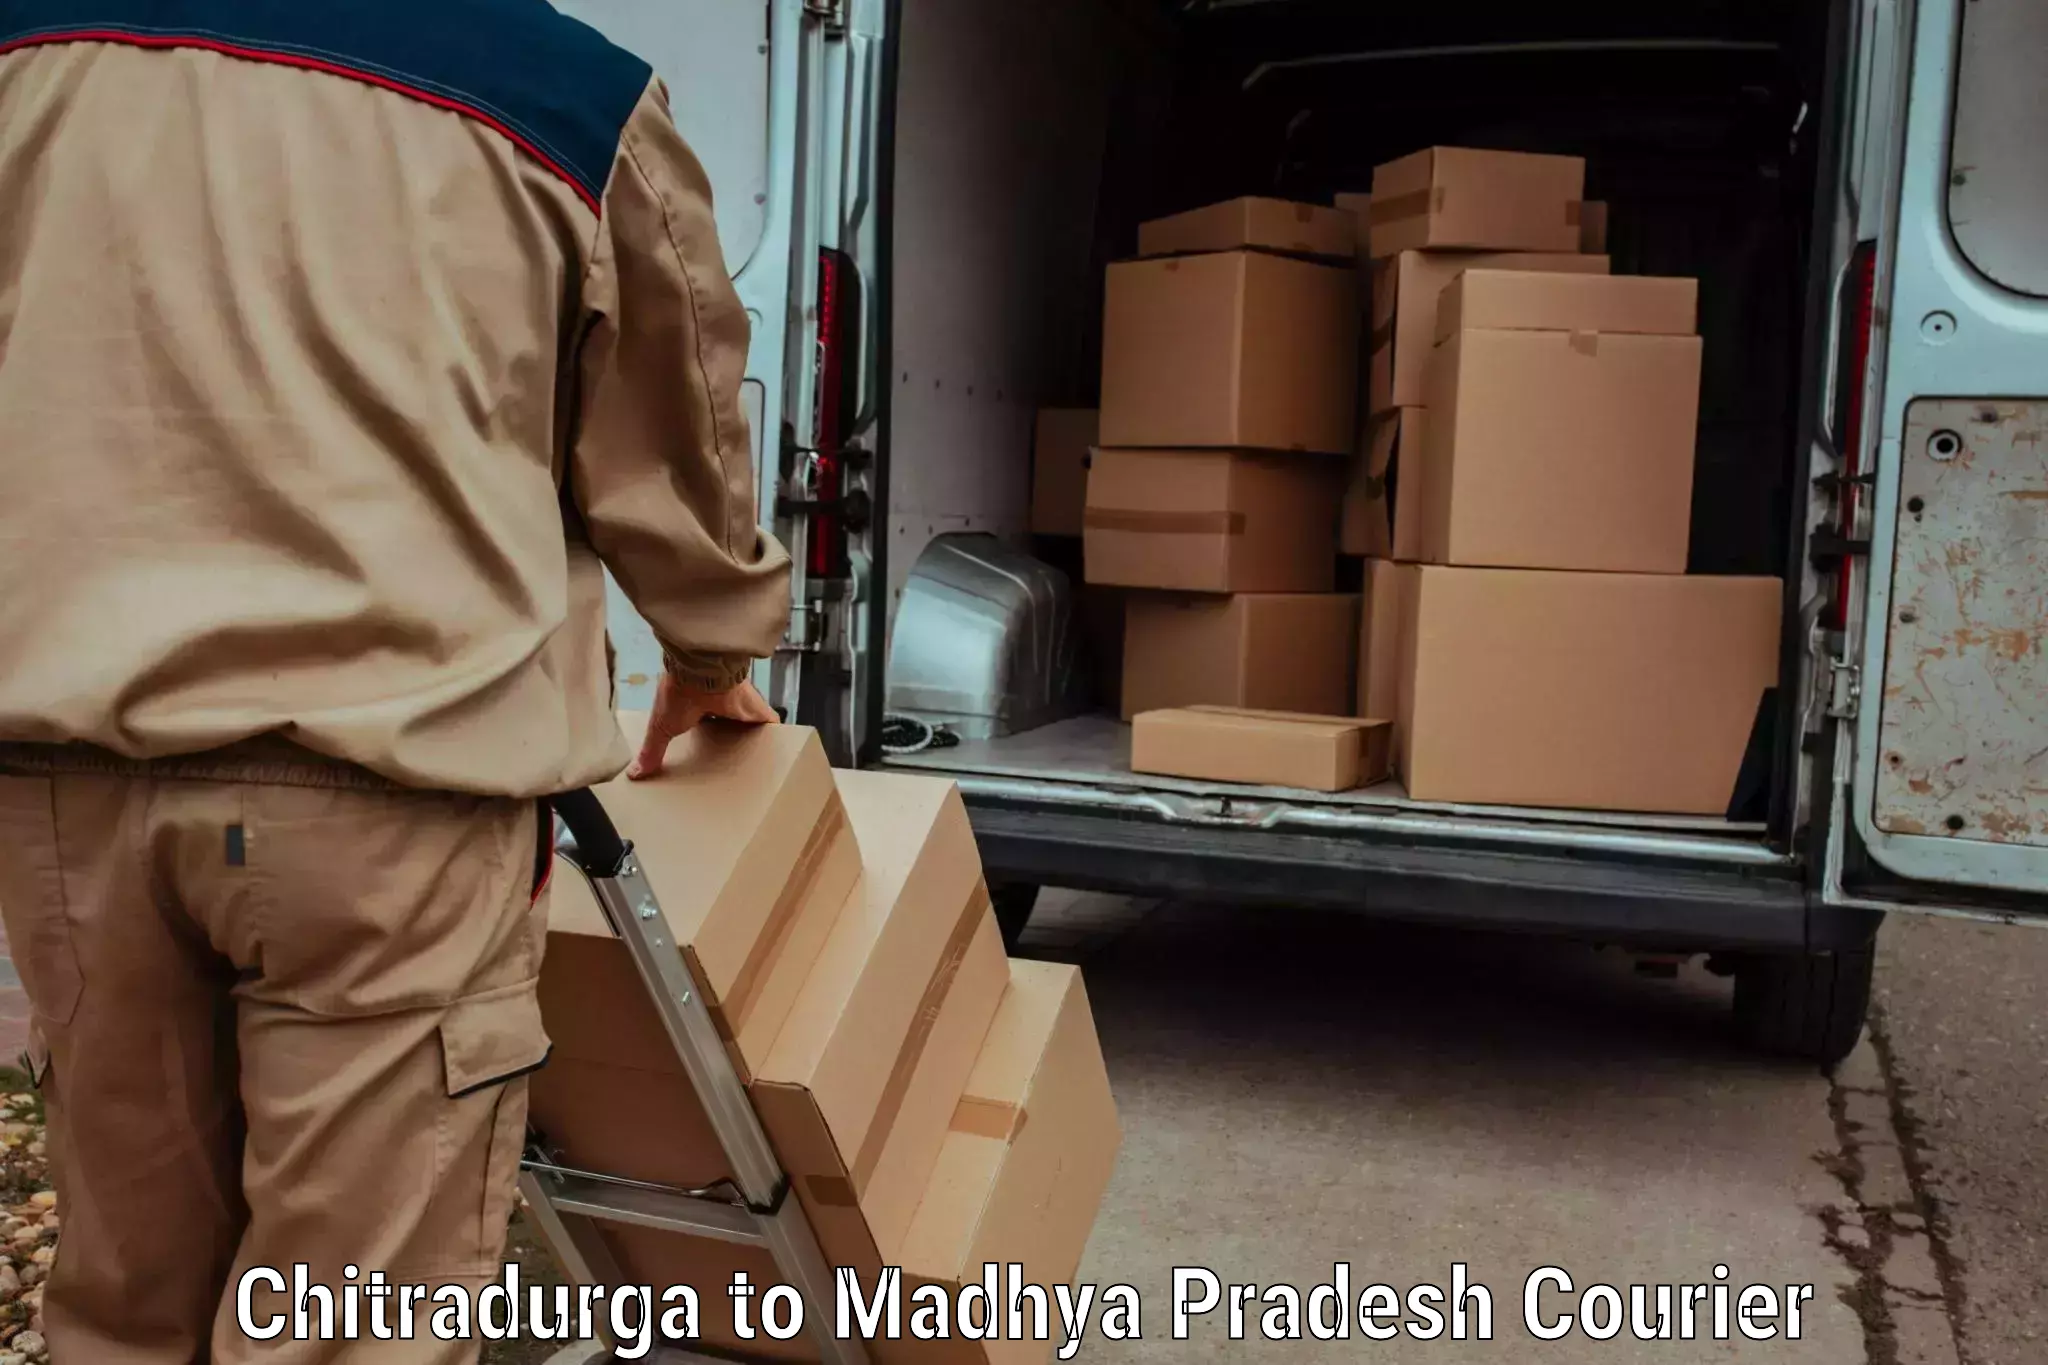 Holiday shipping services Chitradurga to Pithampur